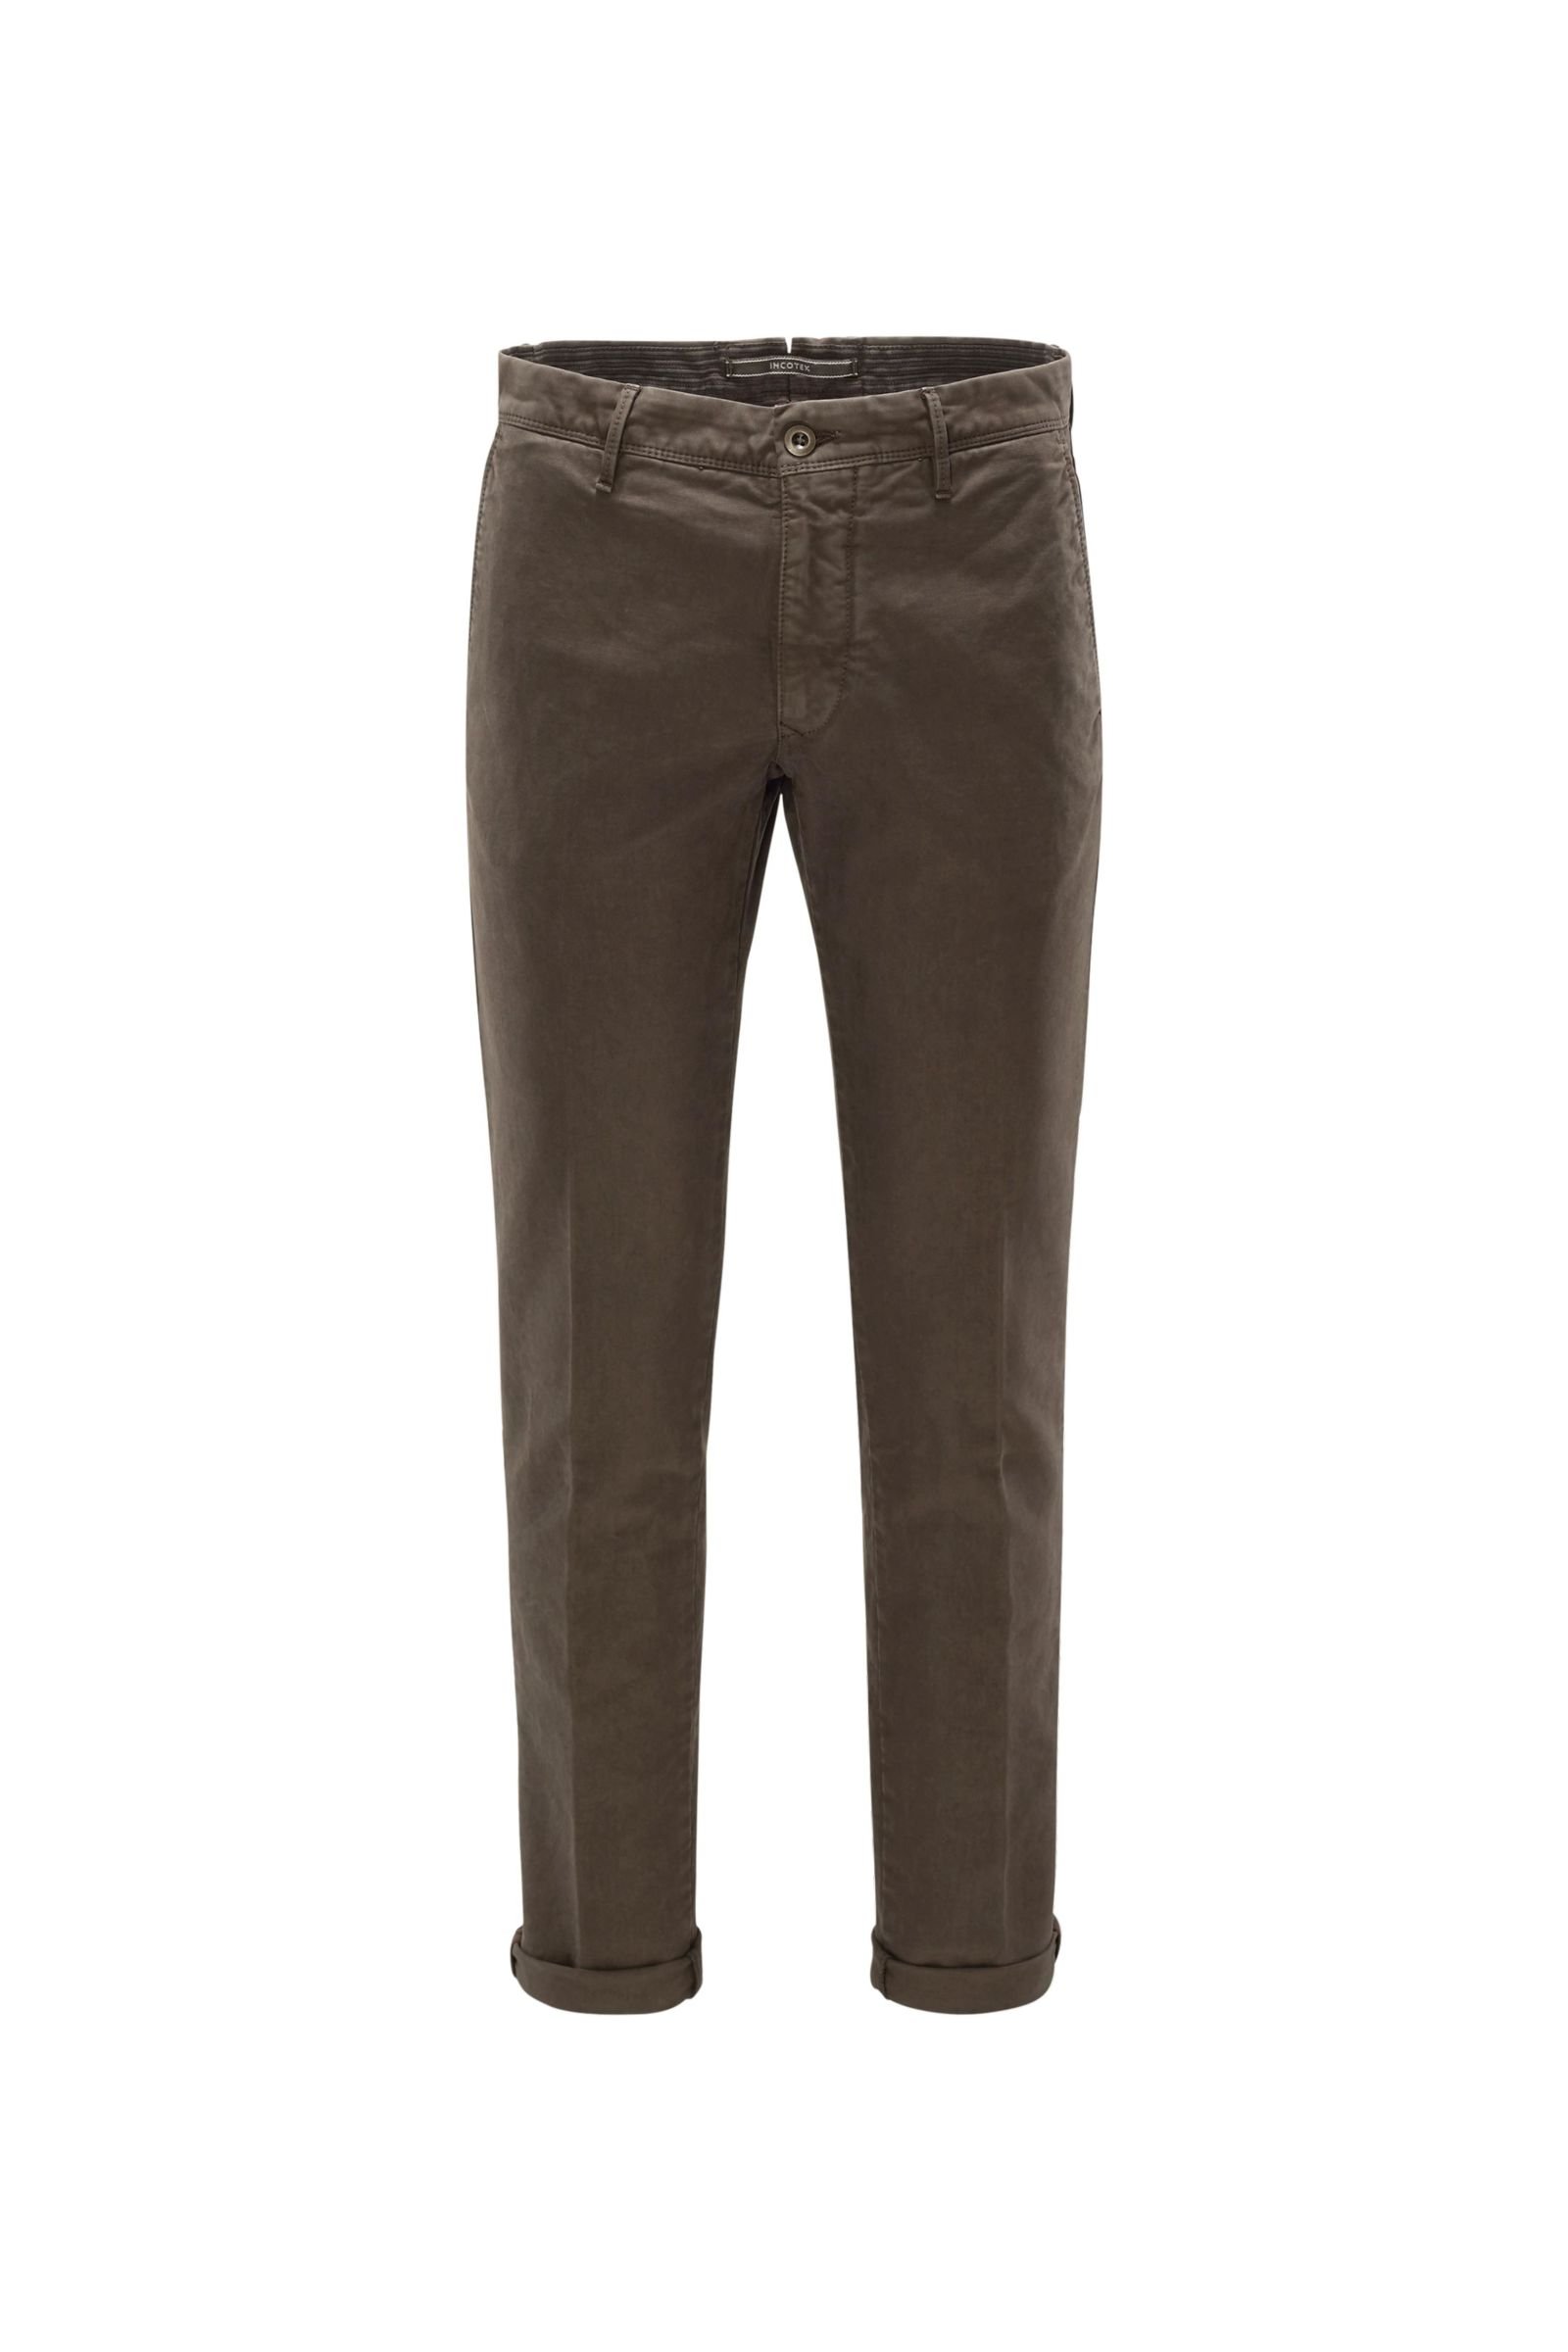 Cotton trousers 'Slacks' grey-brown